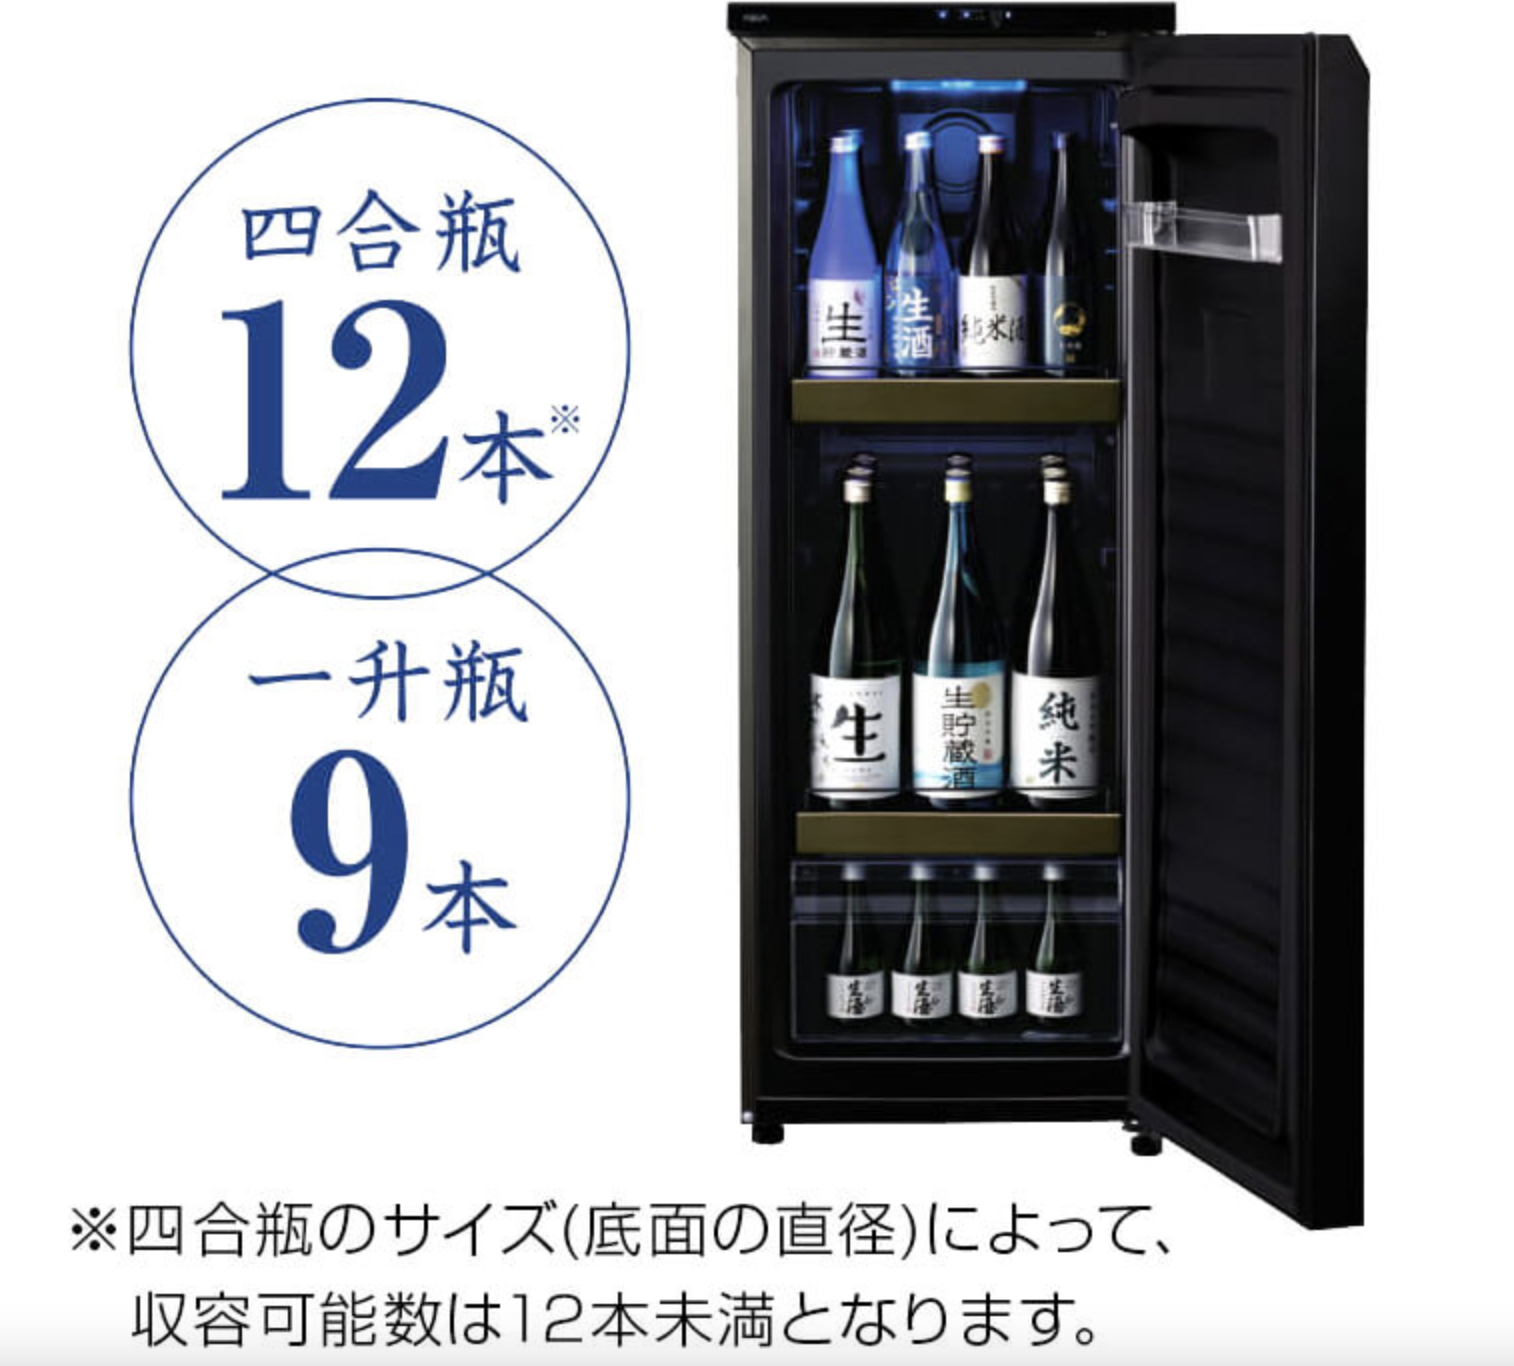 お礼や感謝伝えるプチギフト 冷蔵ショーケース タテ型タイプ SAKURA WORKS 日本酒セラー ZERO CHILLED OSK20-B 